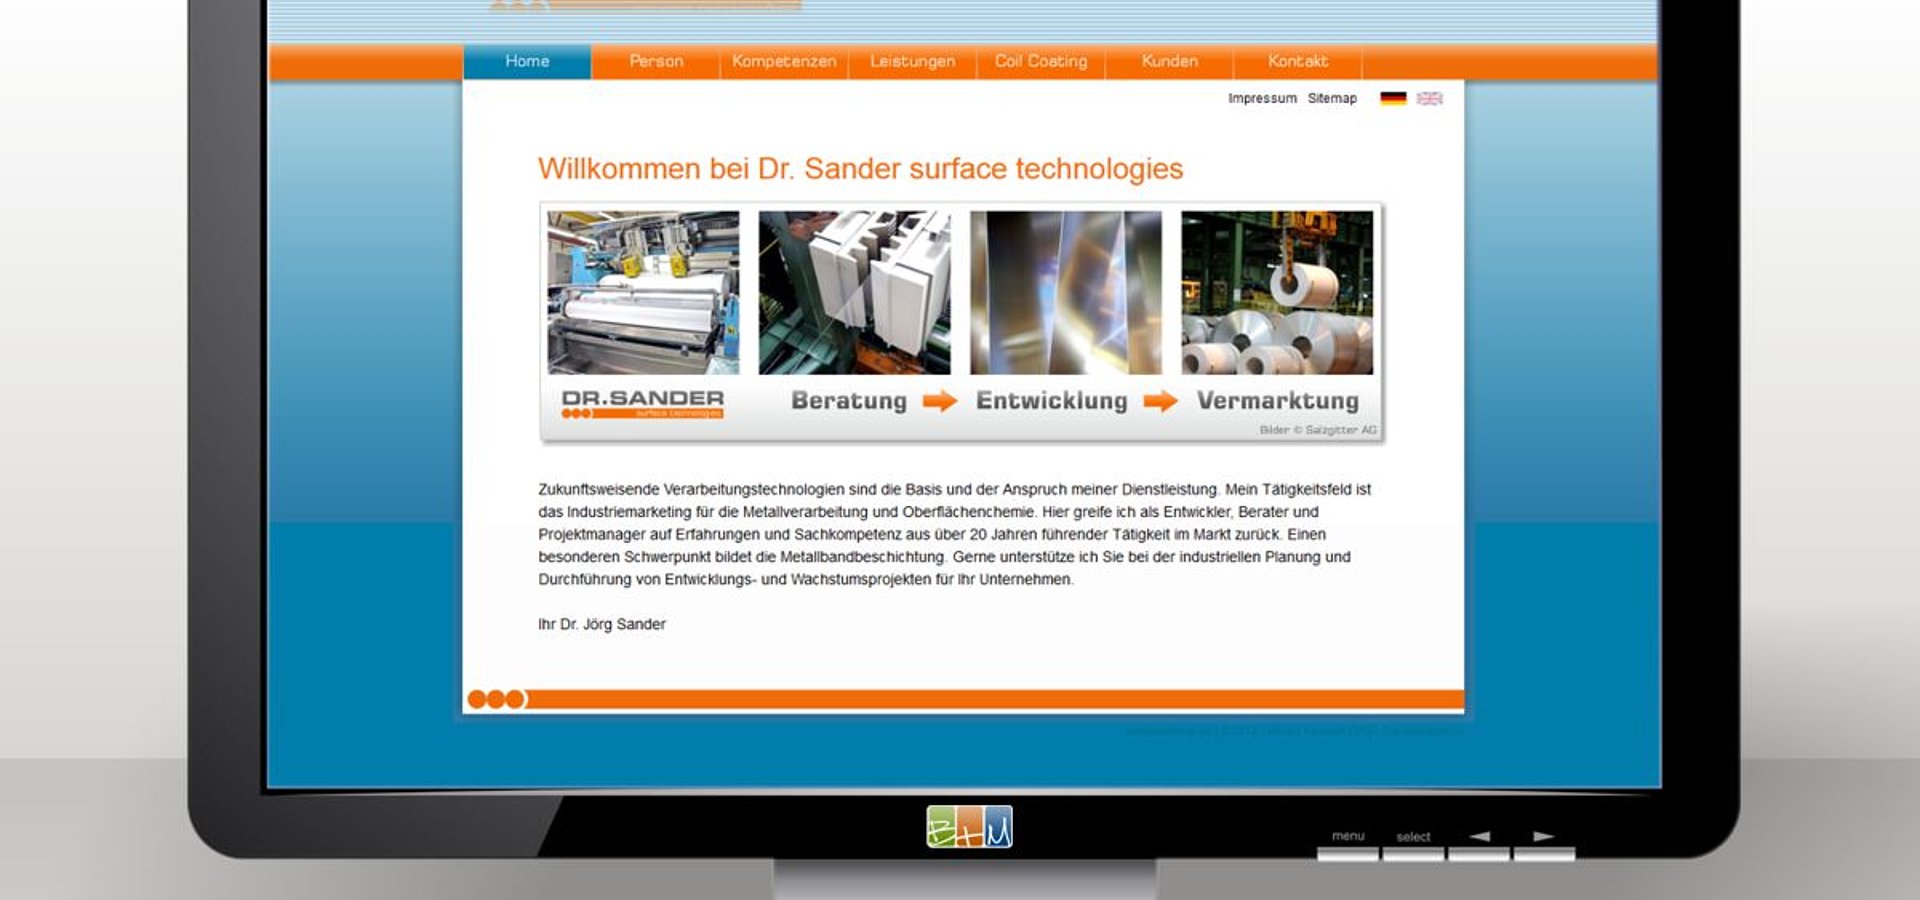 Webdesign: TYPO3 mehrsprachig für DR.SANDER surface technologies / 2011